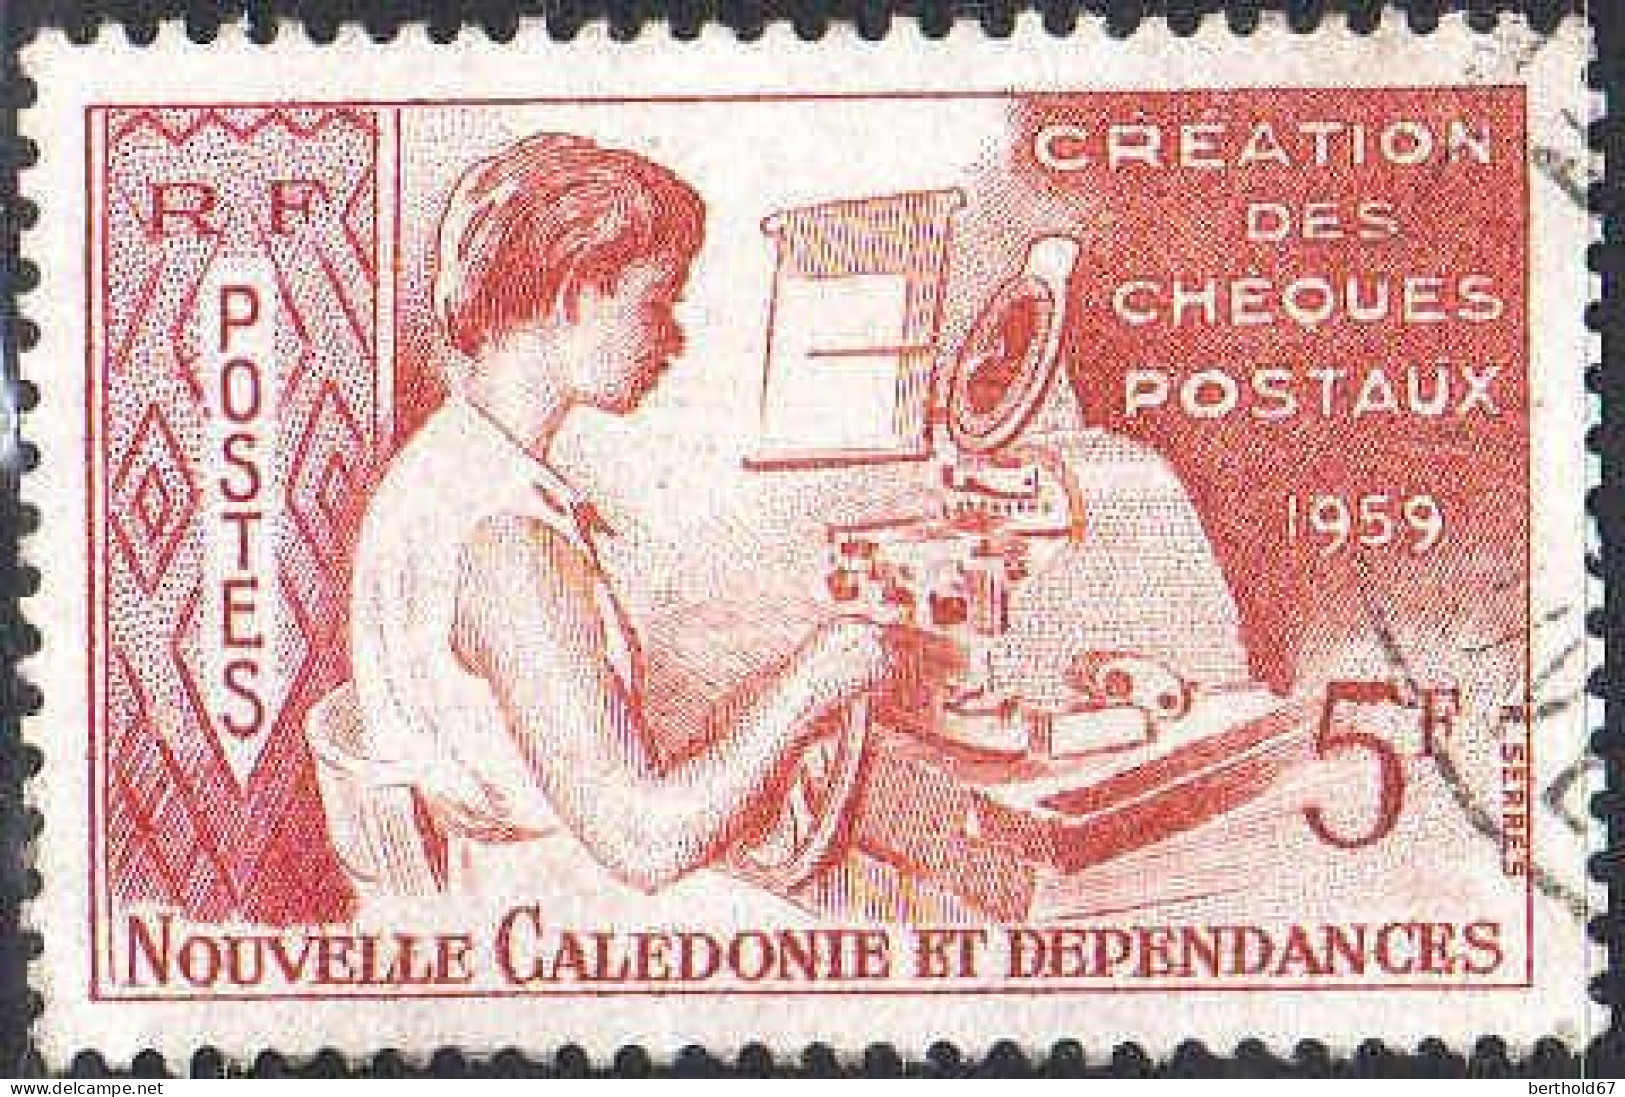 Nle-Calédonie Poste Obl Yv: 296 Mi:371 Création Des Cheques Postaux (Beau Cachet Rond) - Gebruikt